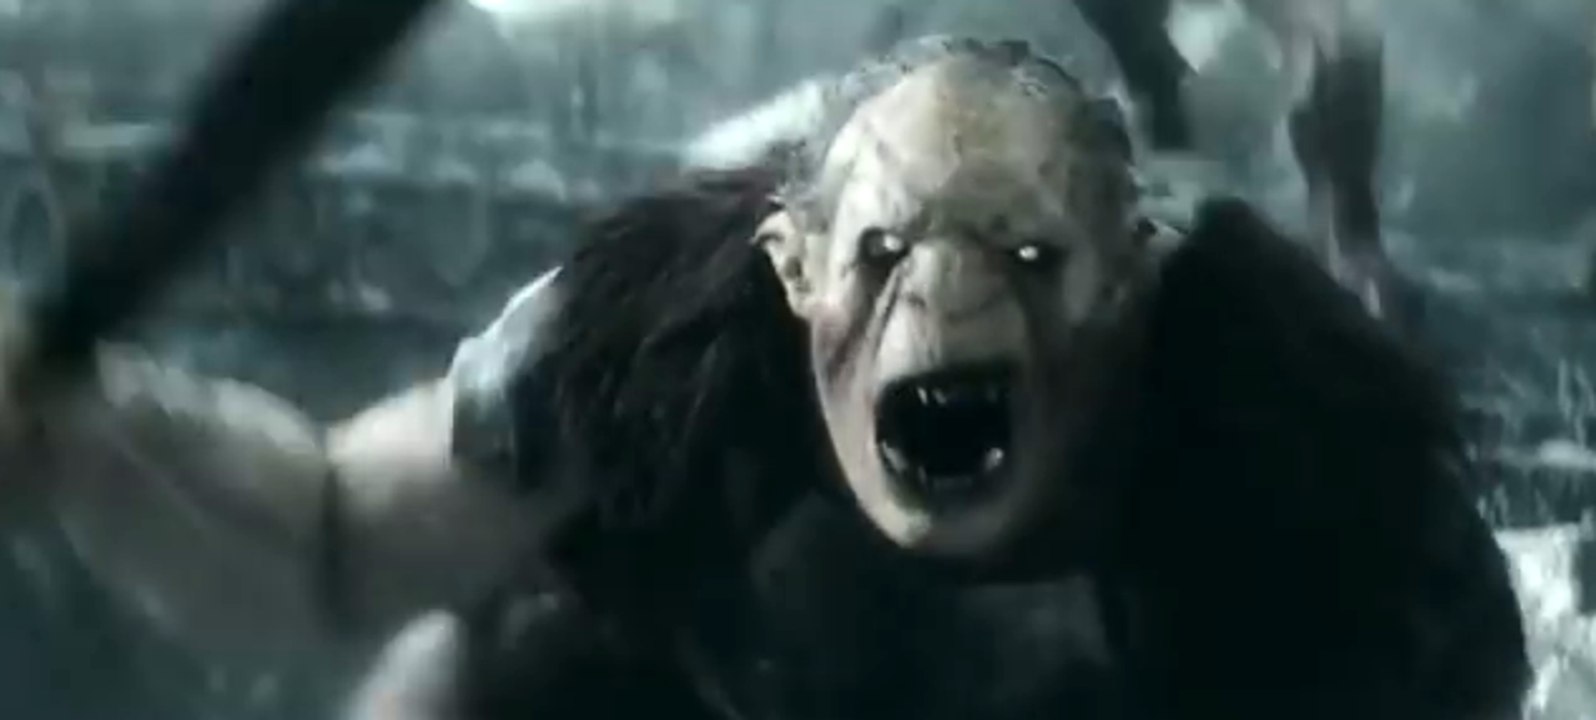 Der Hobbit die Schlacht der FÃ¼nf Heere Extended Edition - TV Spot 2 (Deutsch) HD